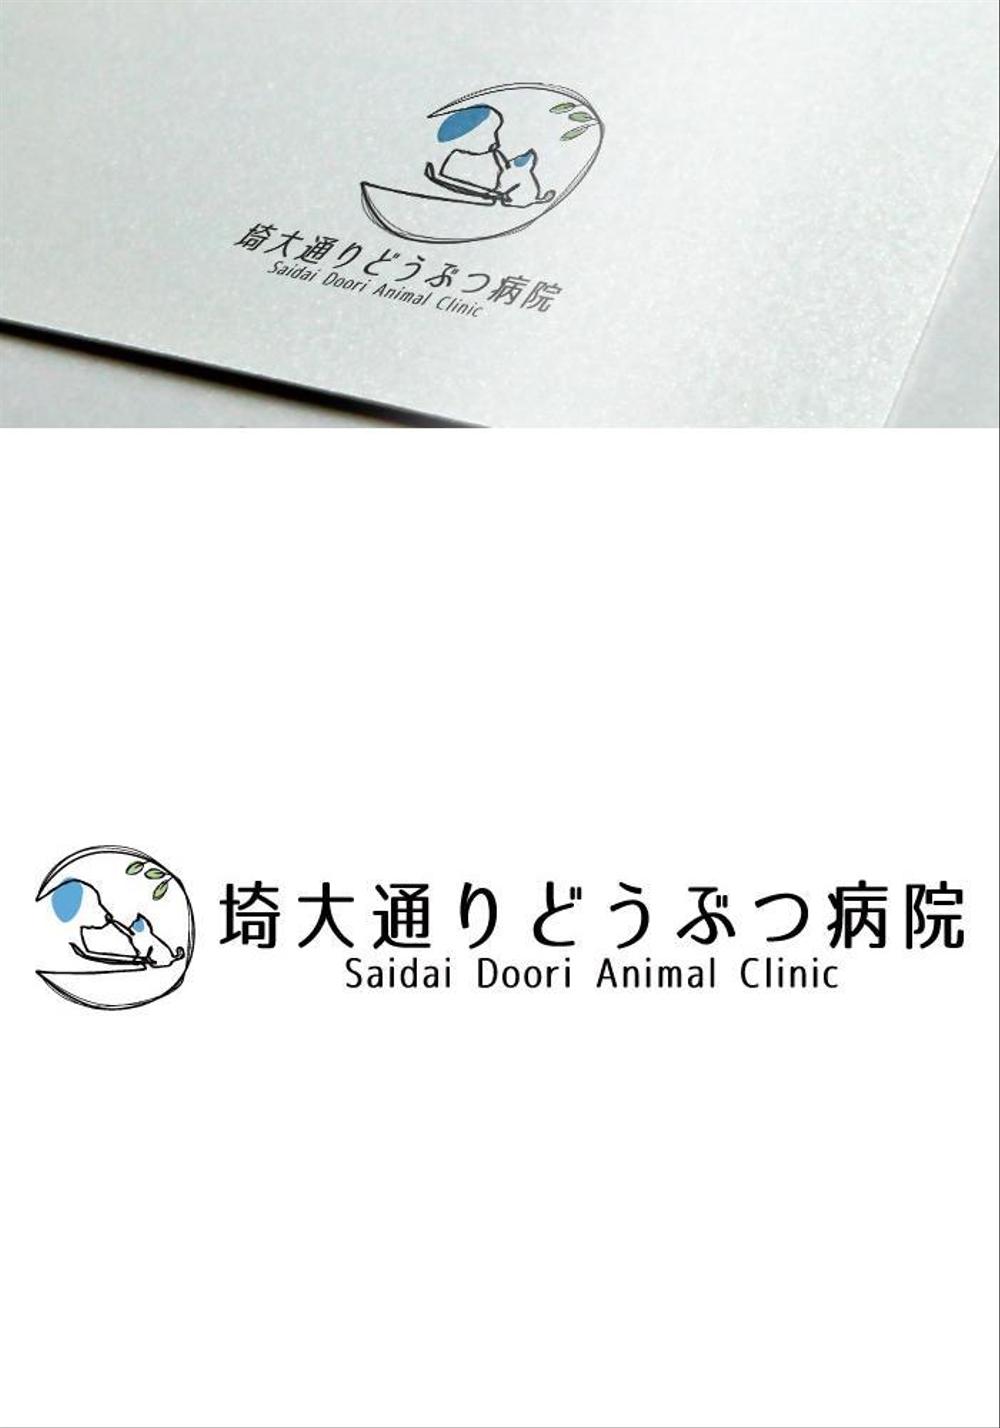 動物病院　「埼大通りどうぶつ病院」のロゴ